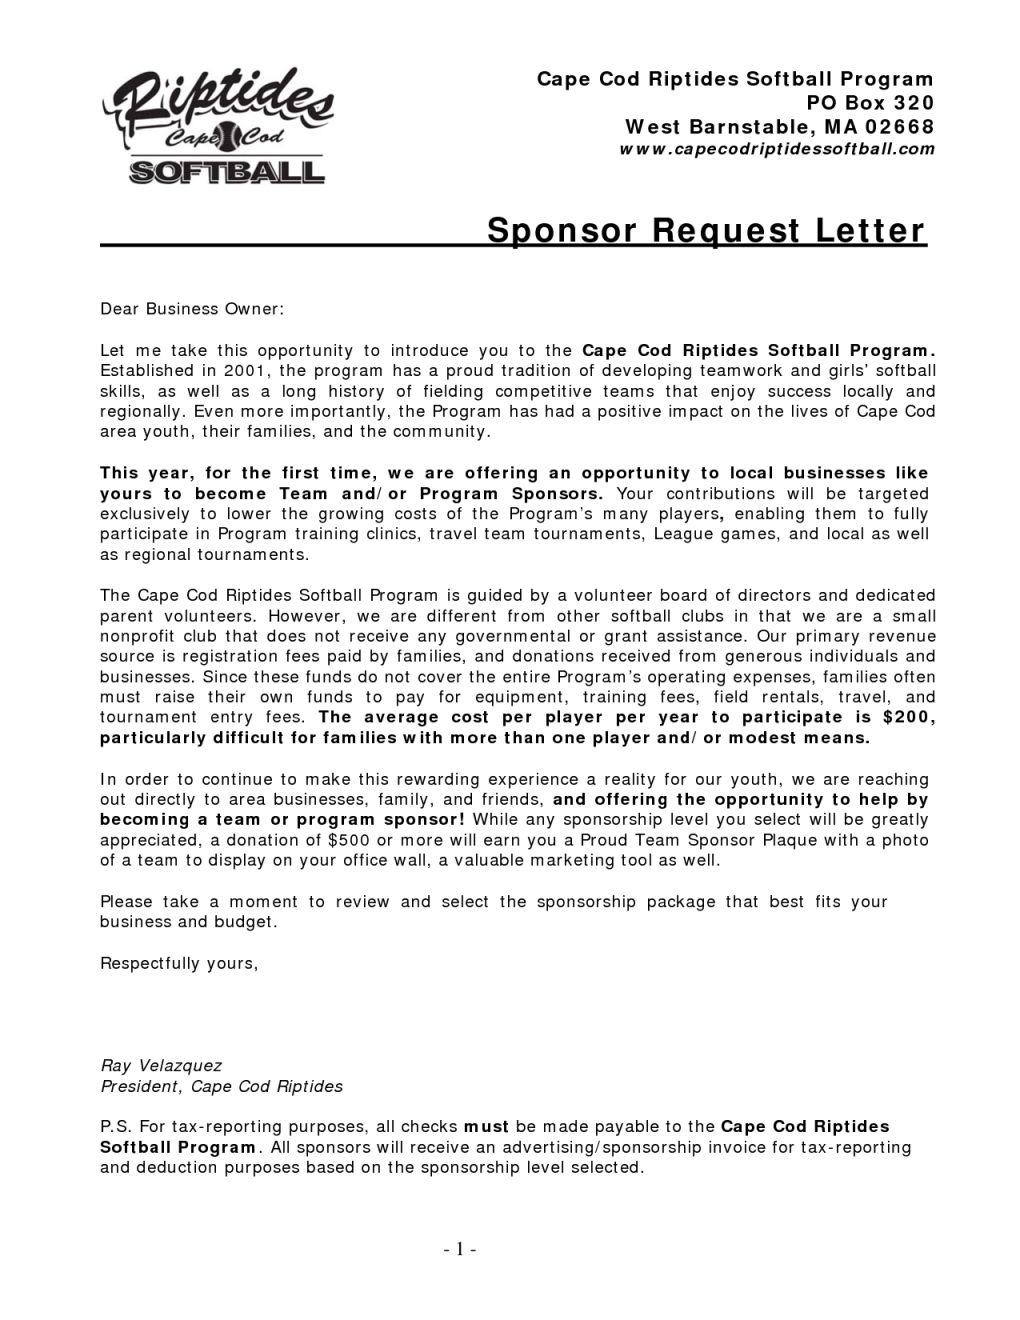 travel baseball fundraising letter